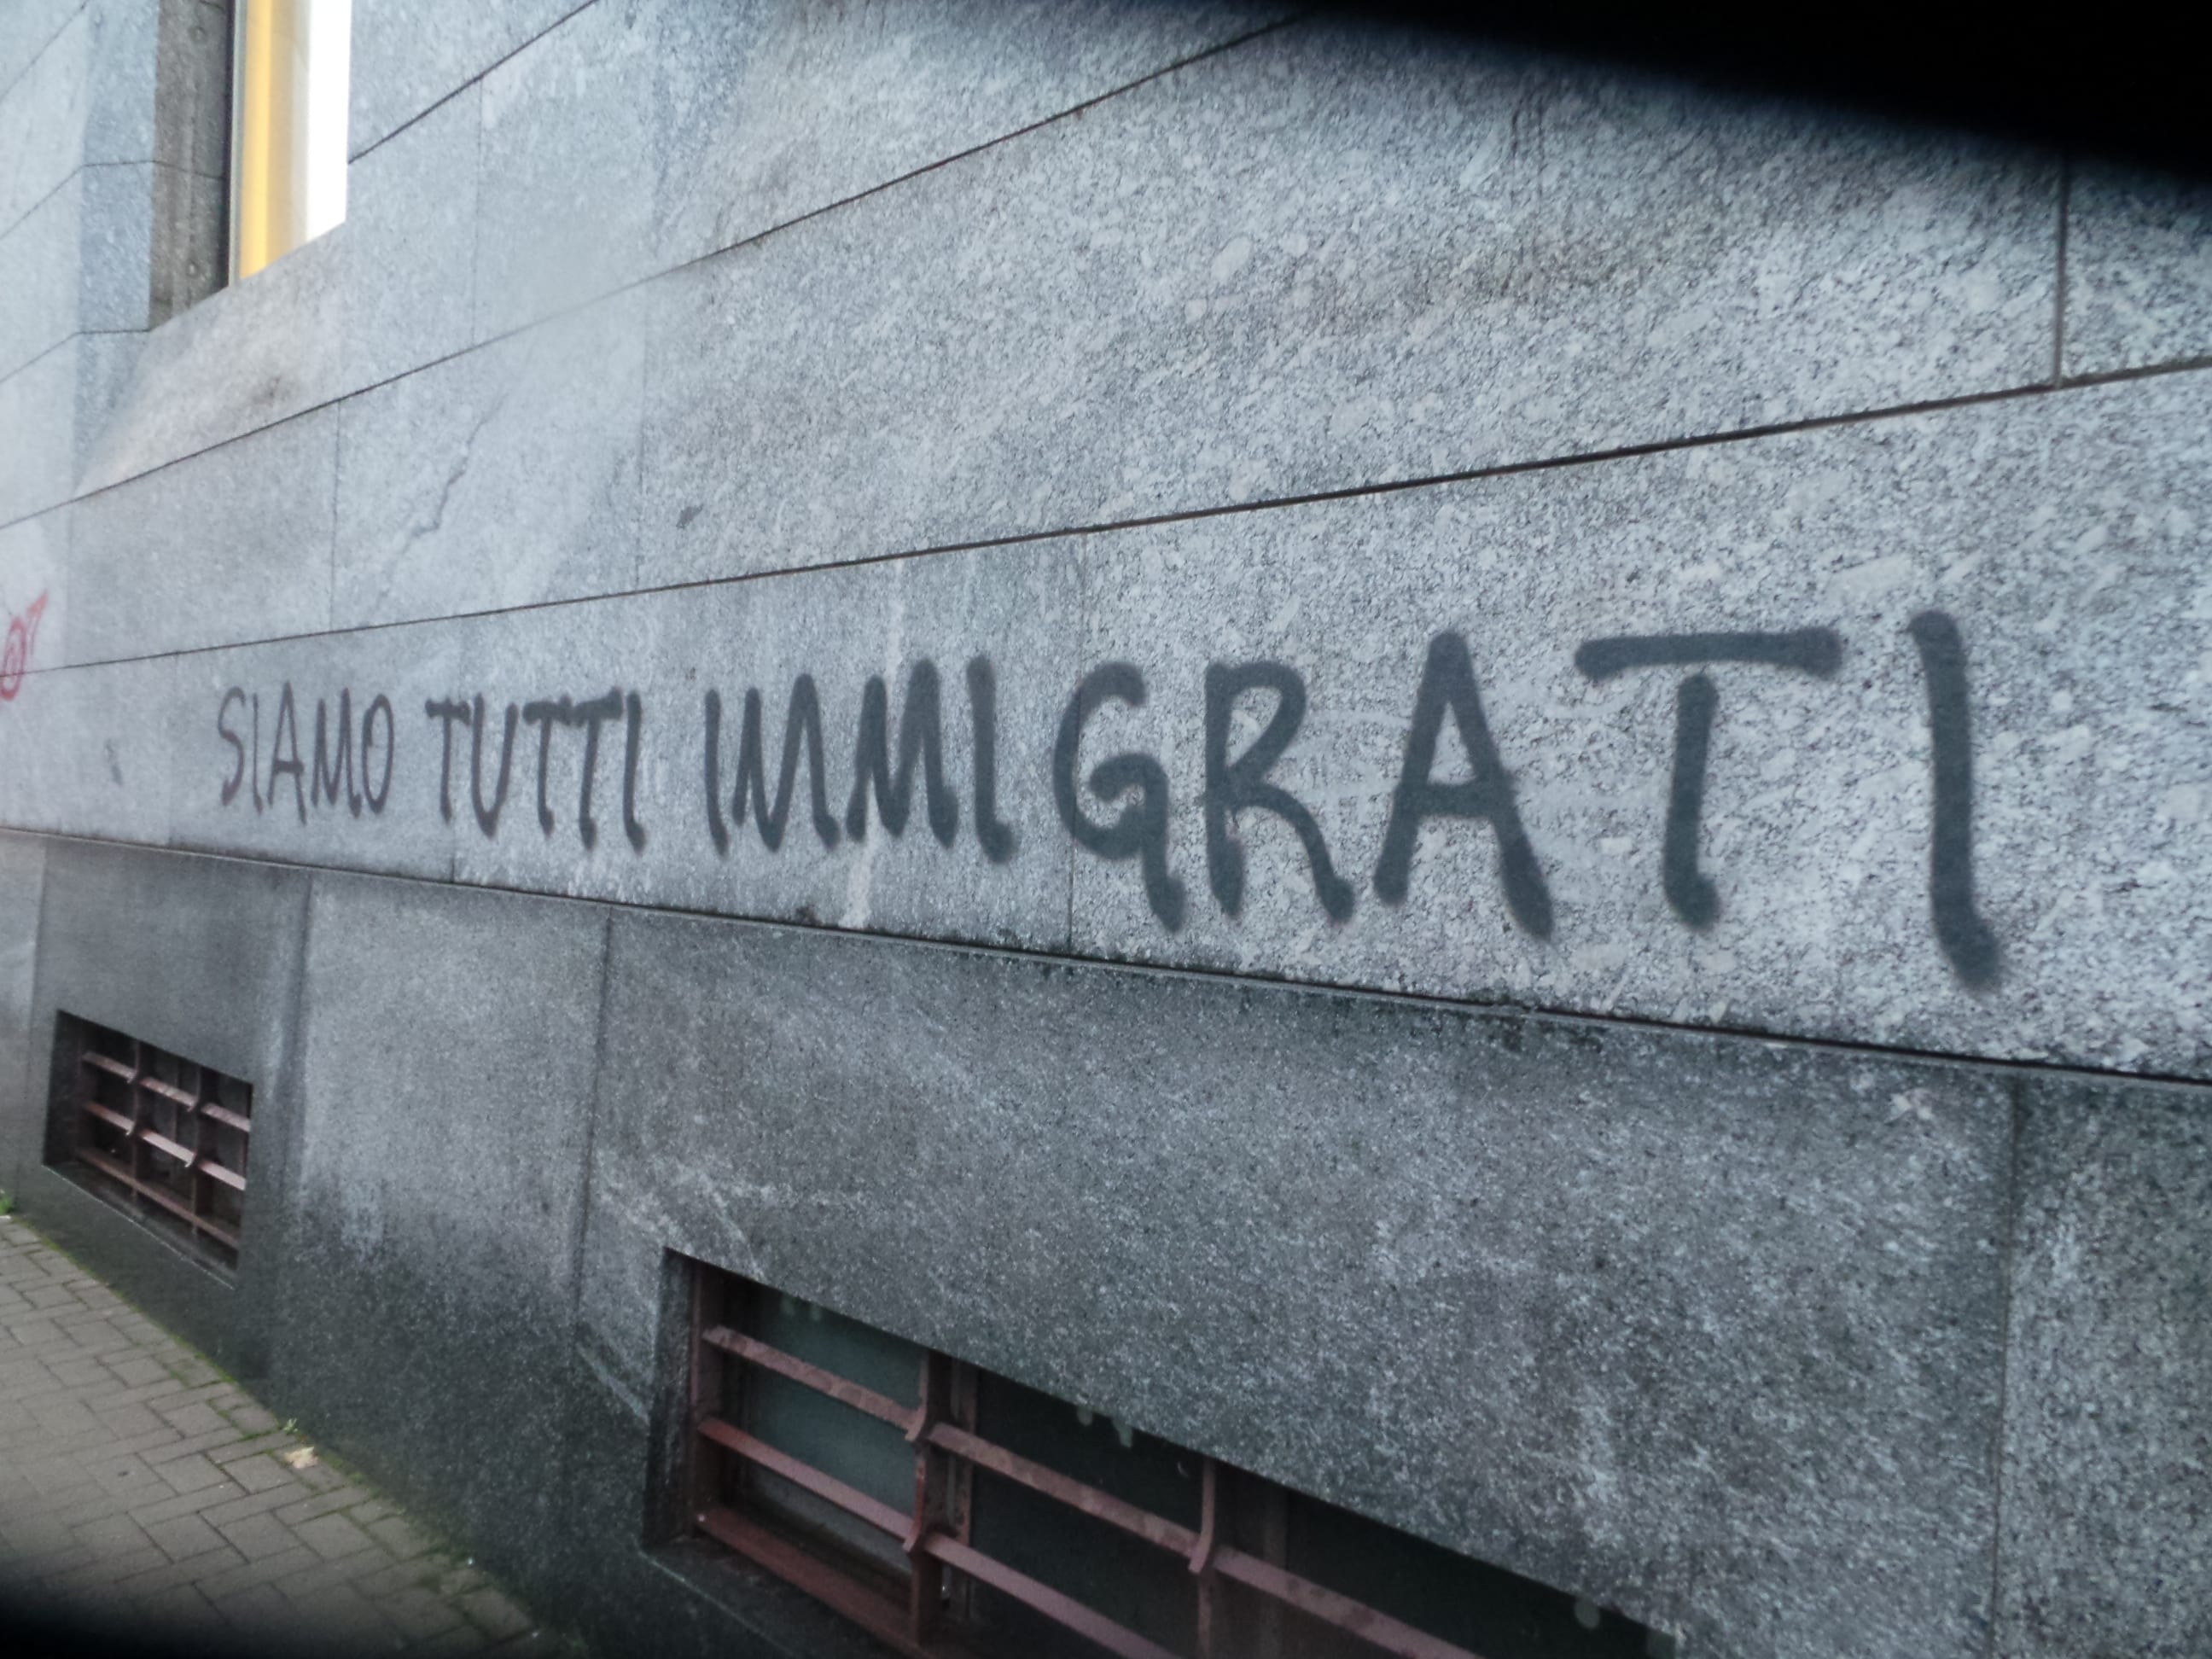 No borders anarchici sulla Saronno-Como: stazione piena di scritte